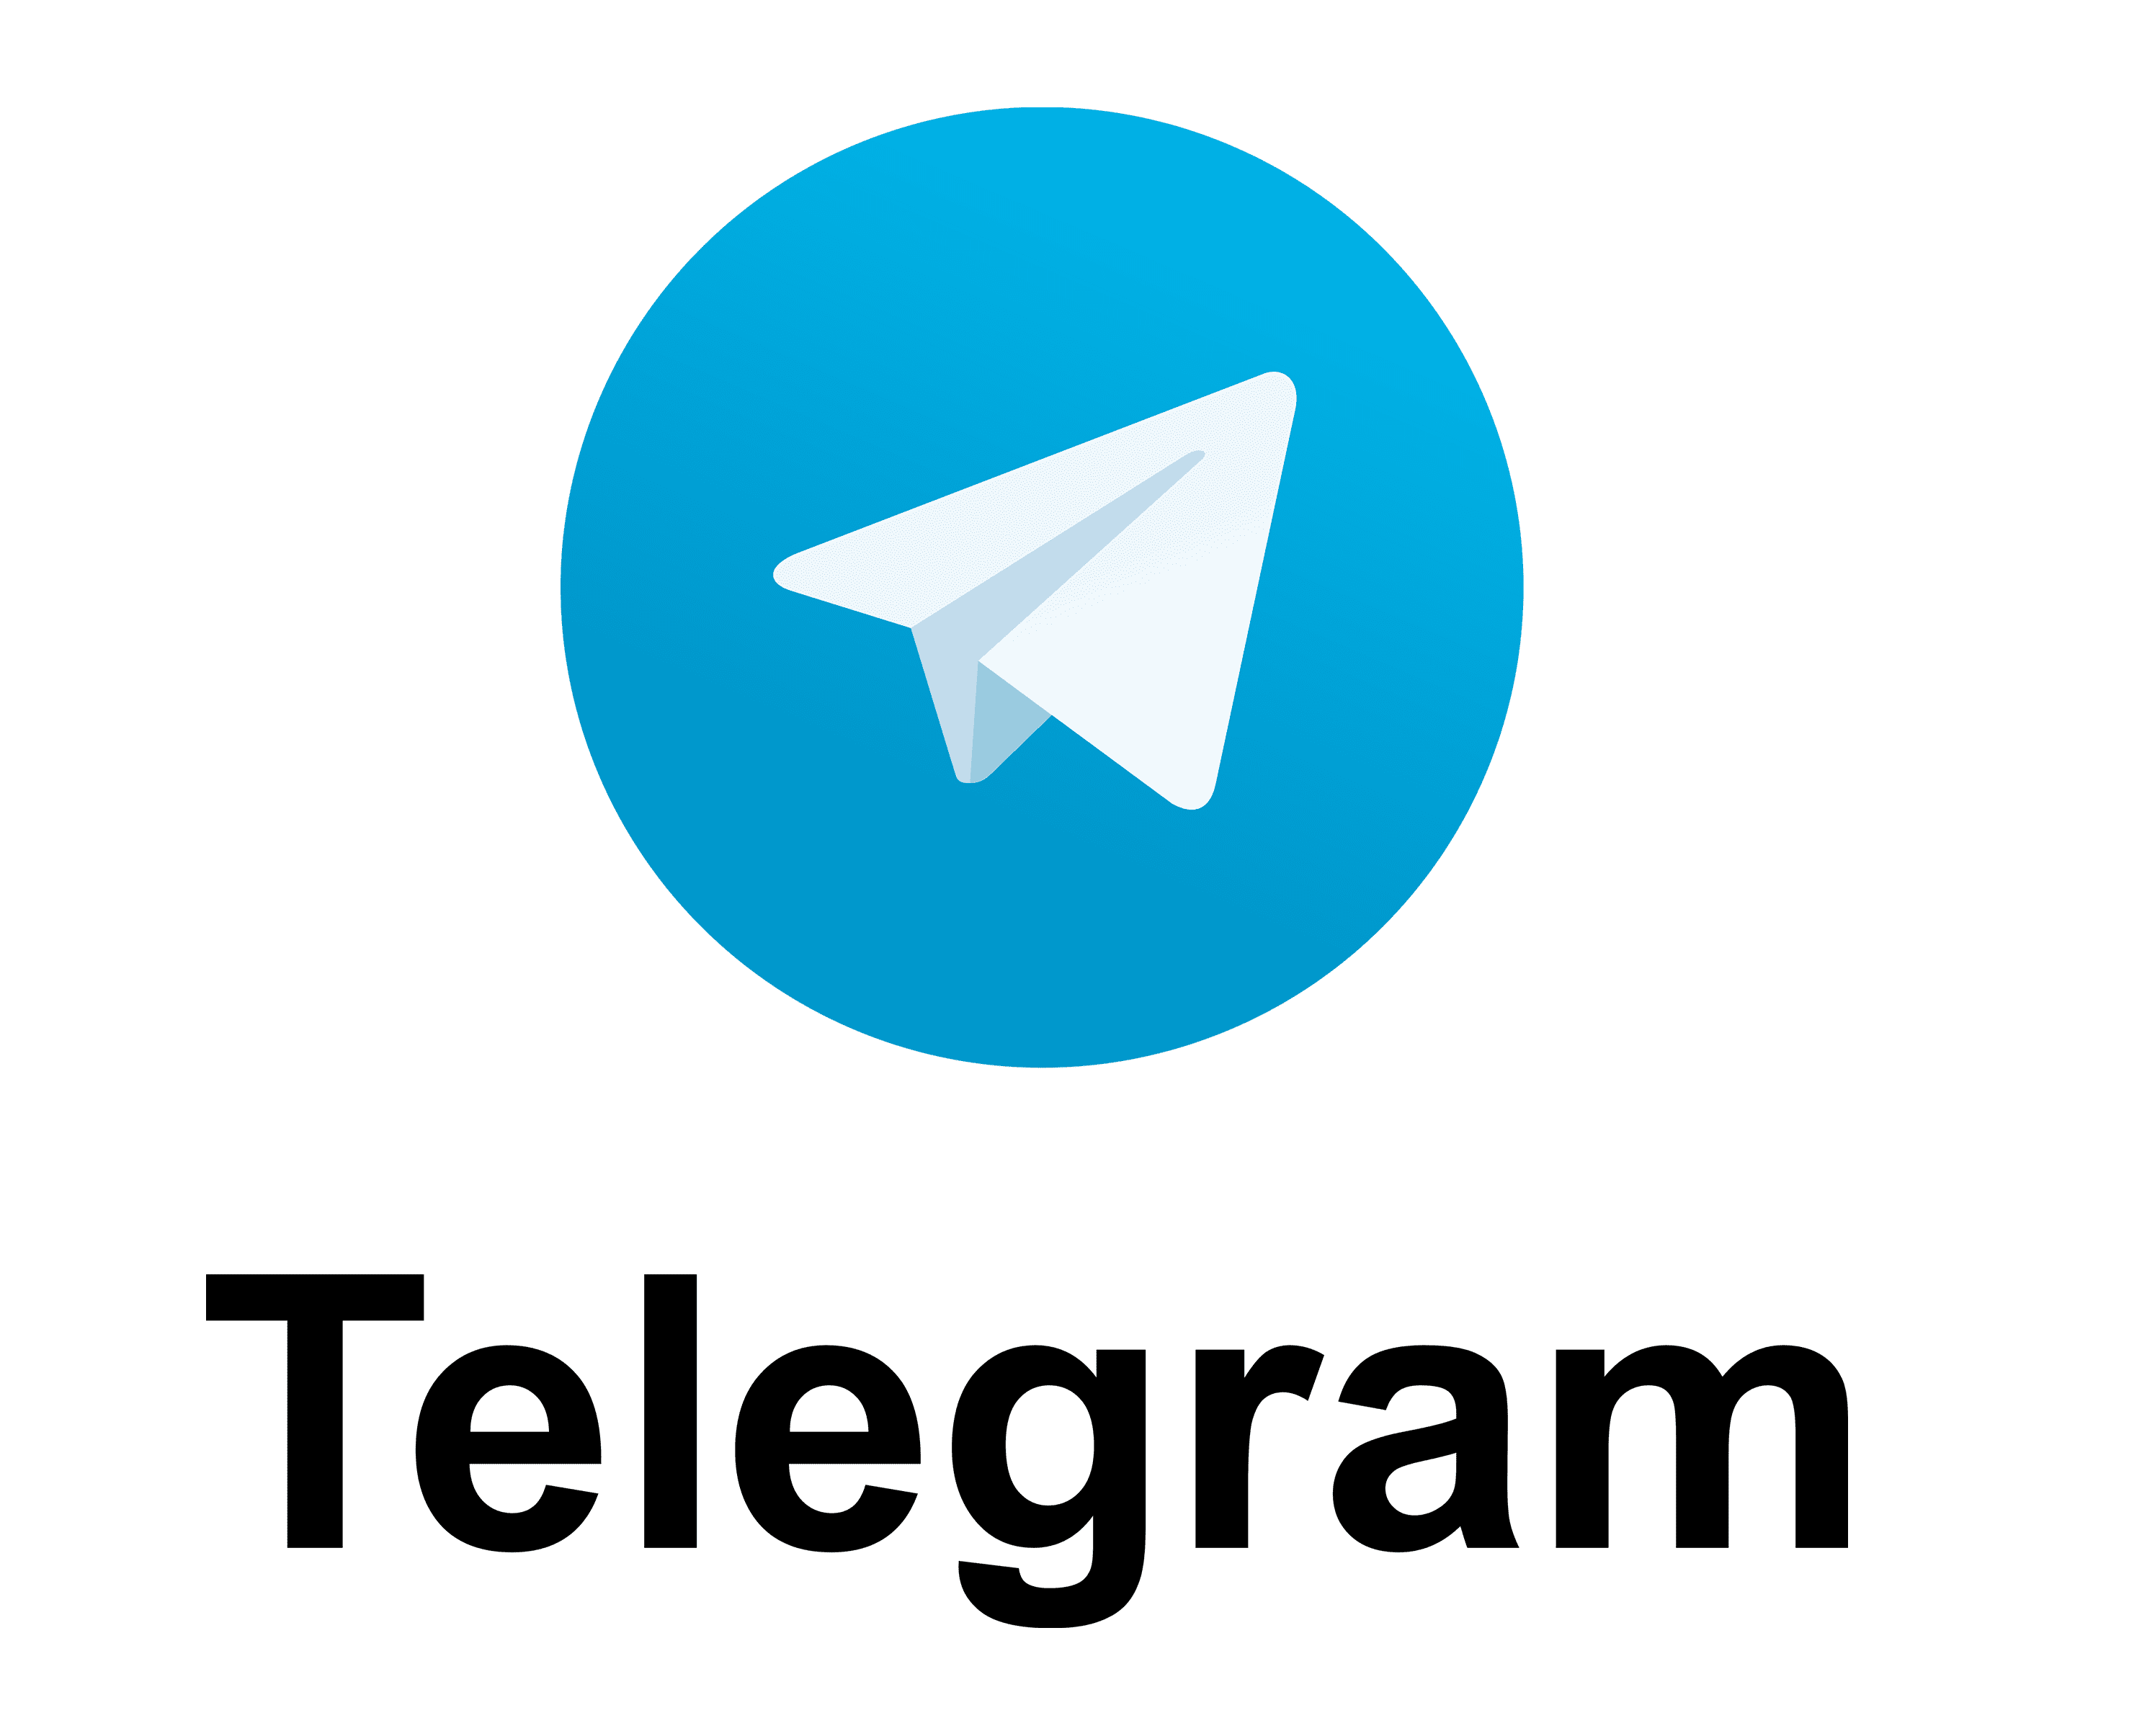 Telegram web file. Телеграмм лого. Логотип Telegram. Пиктограмма телеграм. Телеграмм web.